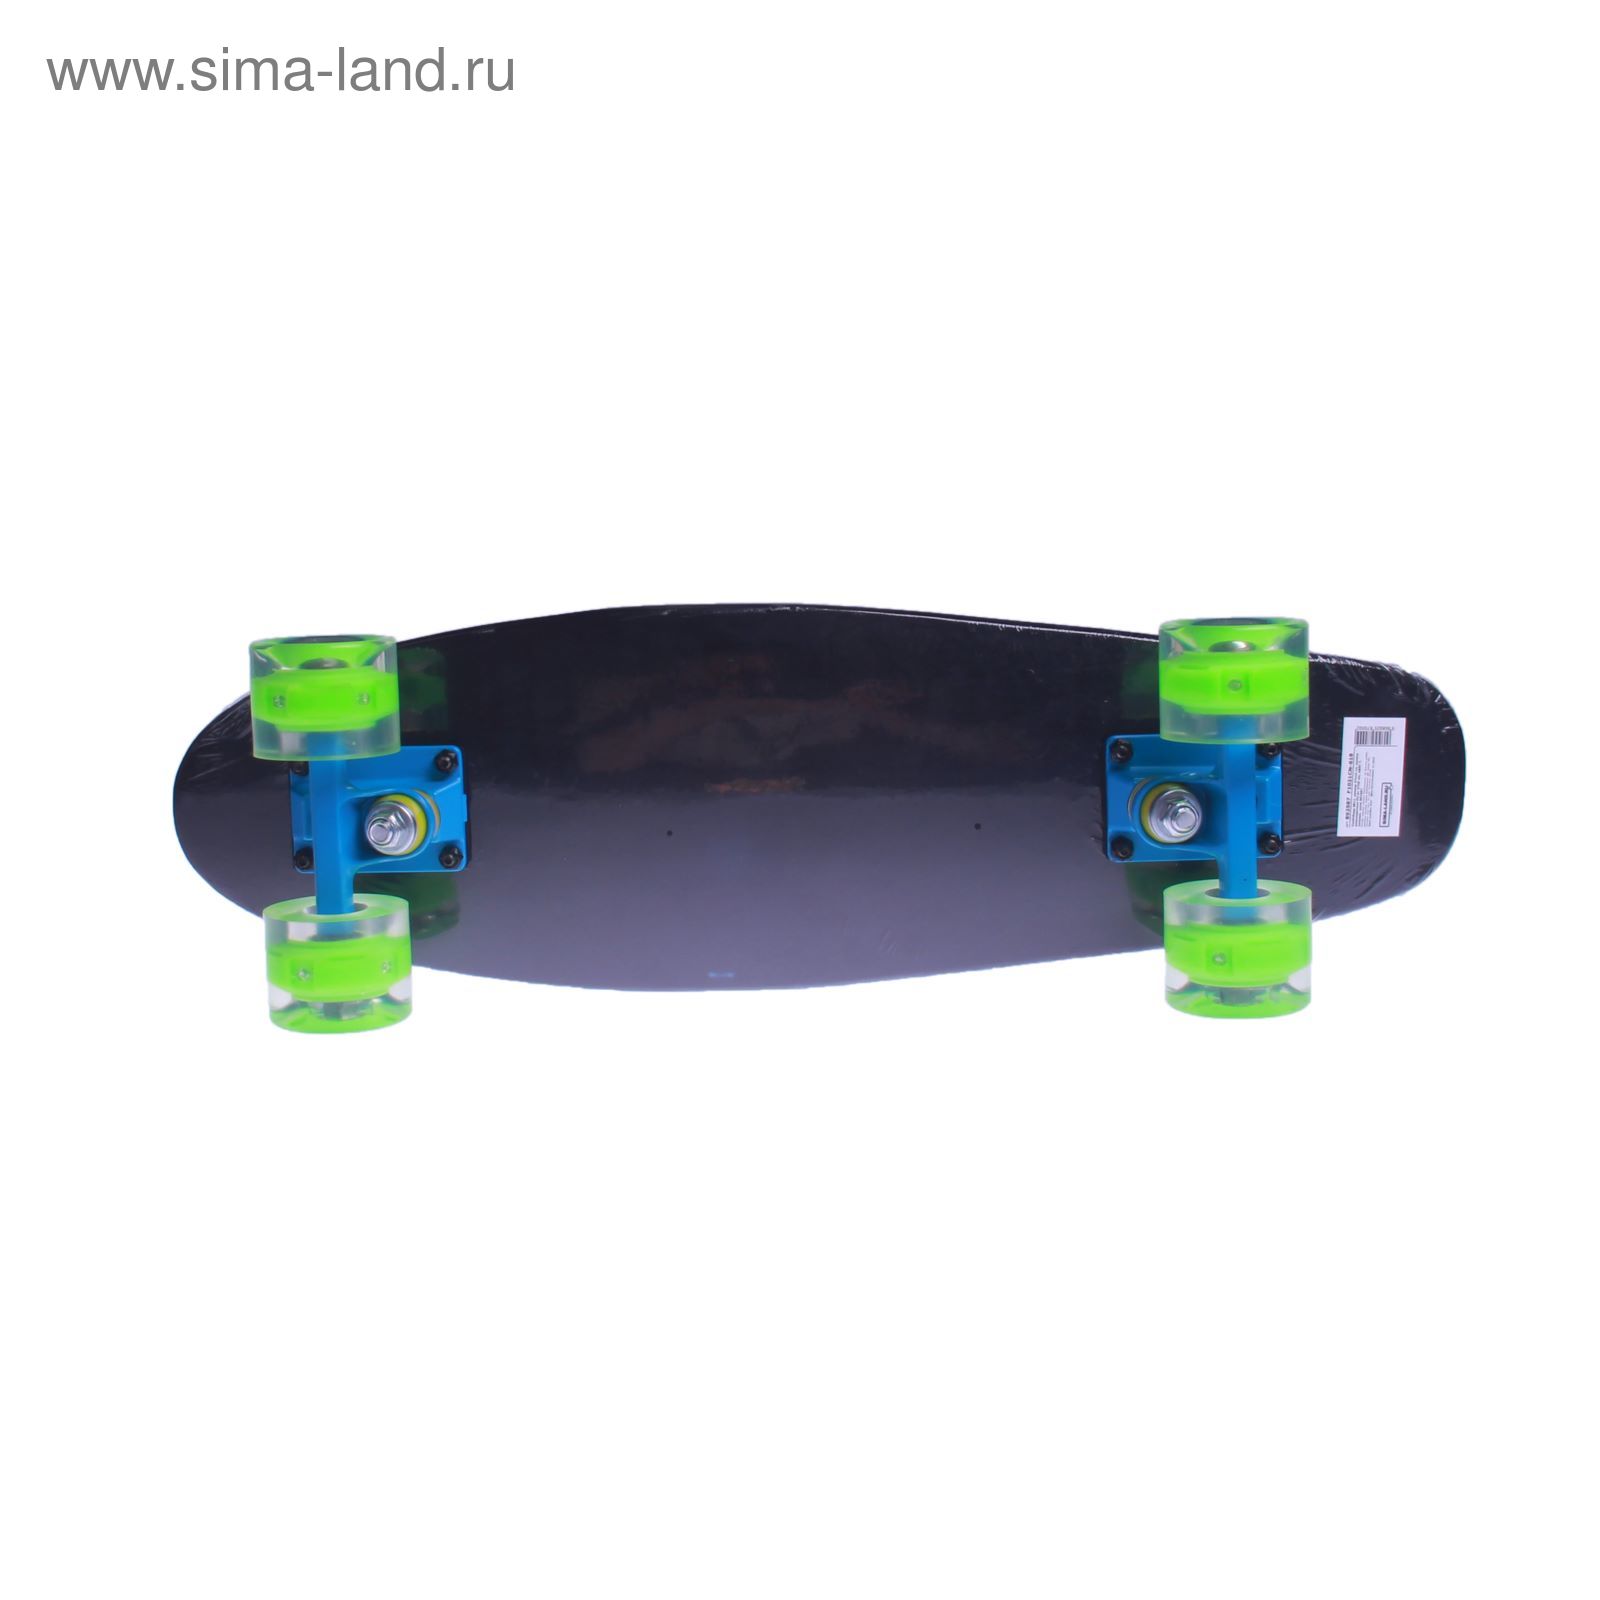 Скейтборд с разноцветными колёсами, PU d= 57*45 мм, алюминиевая рама, МИКС